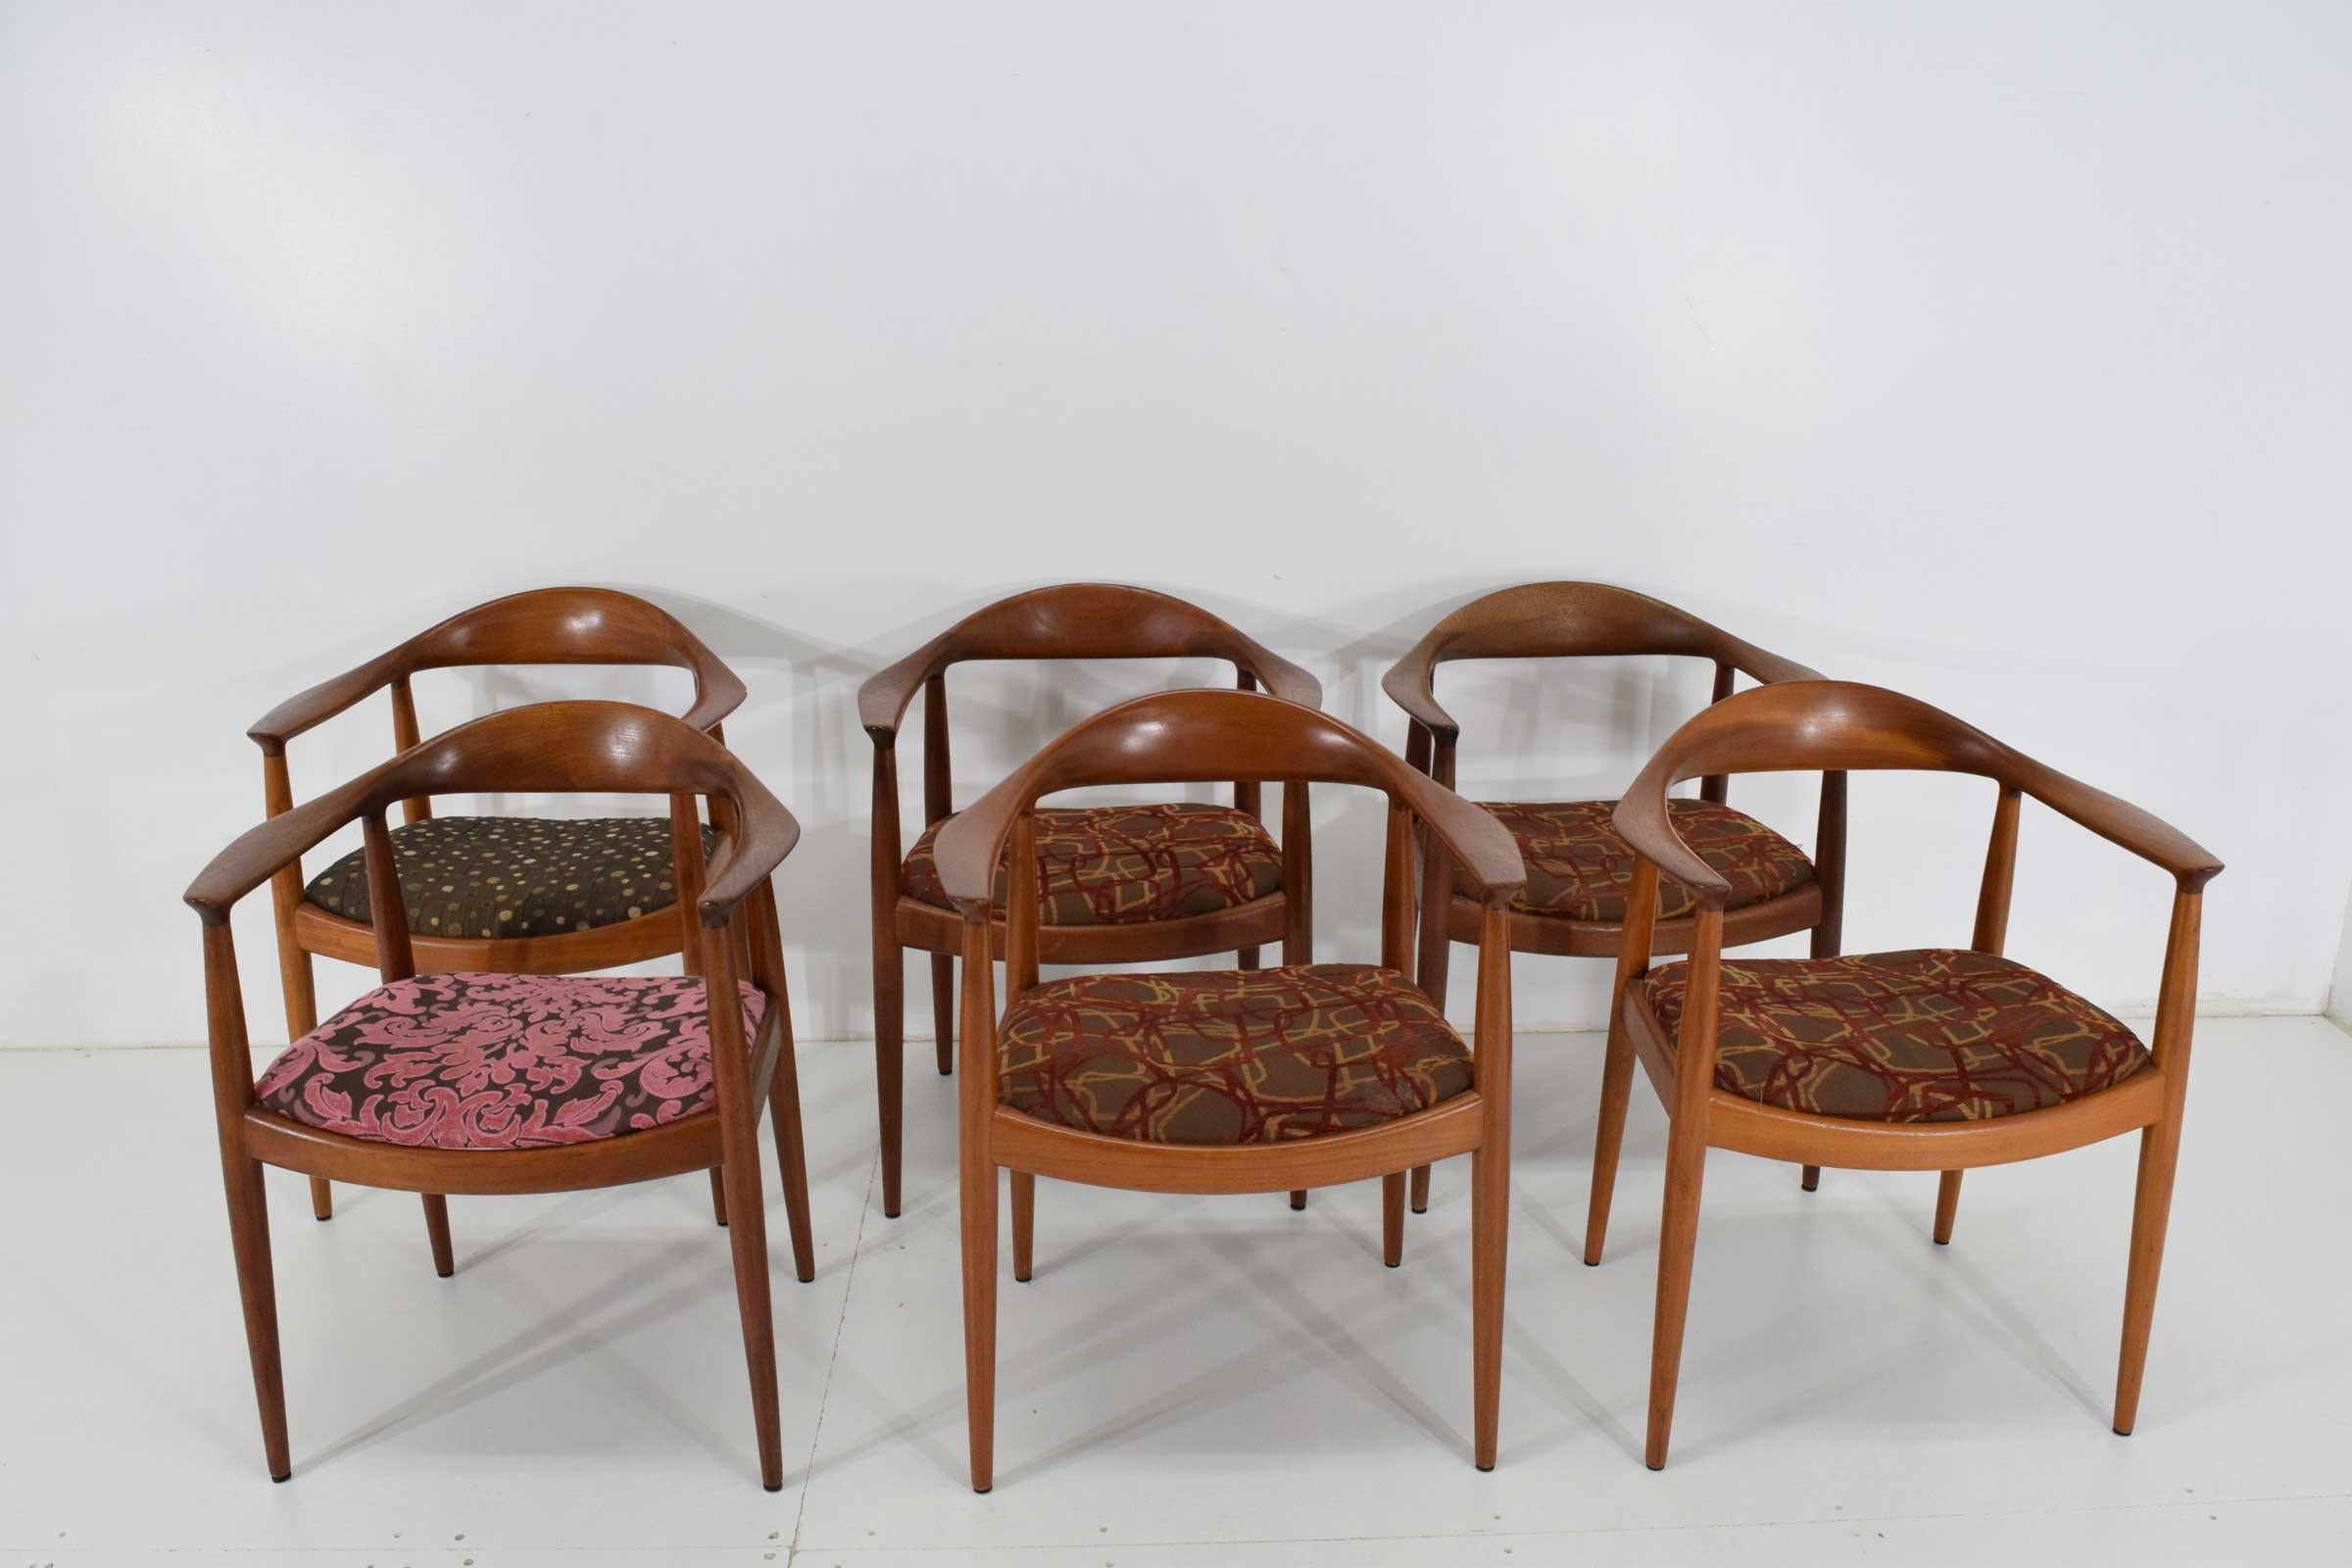 Danish Hans Wegner Round Chairs 8 Available